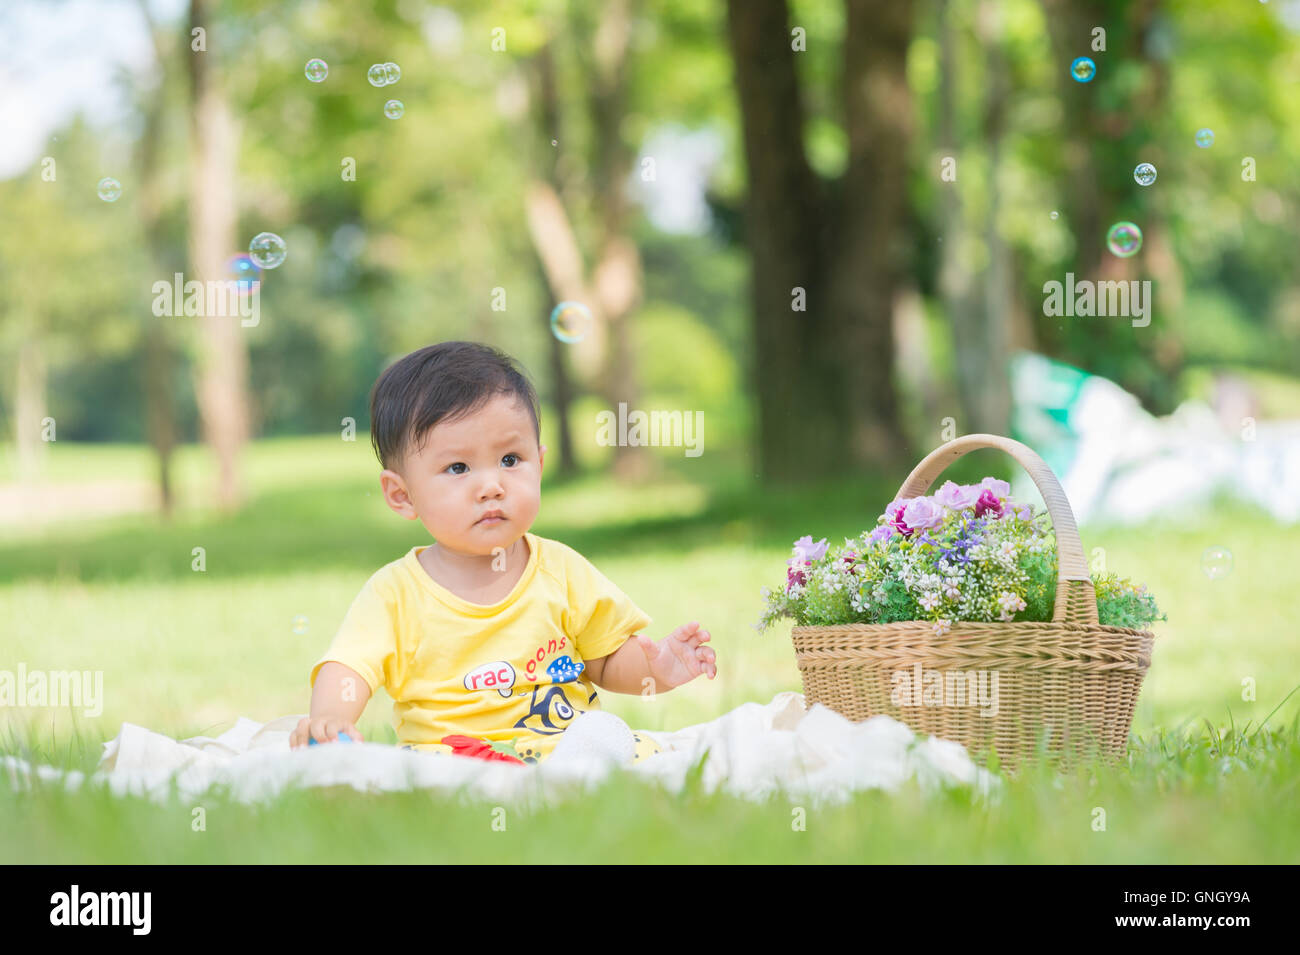 Asia Baby Boy sentado en el pasto verde en el parque con pompas de jabón Foto de stock